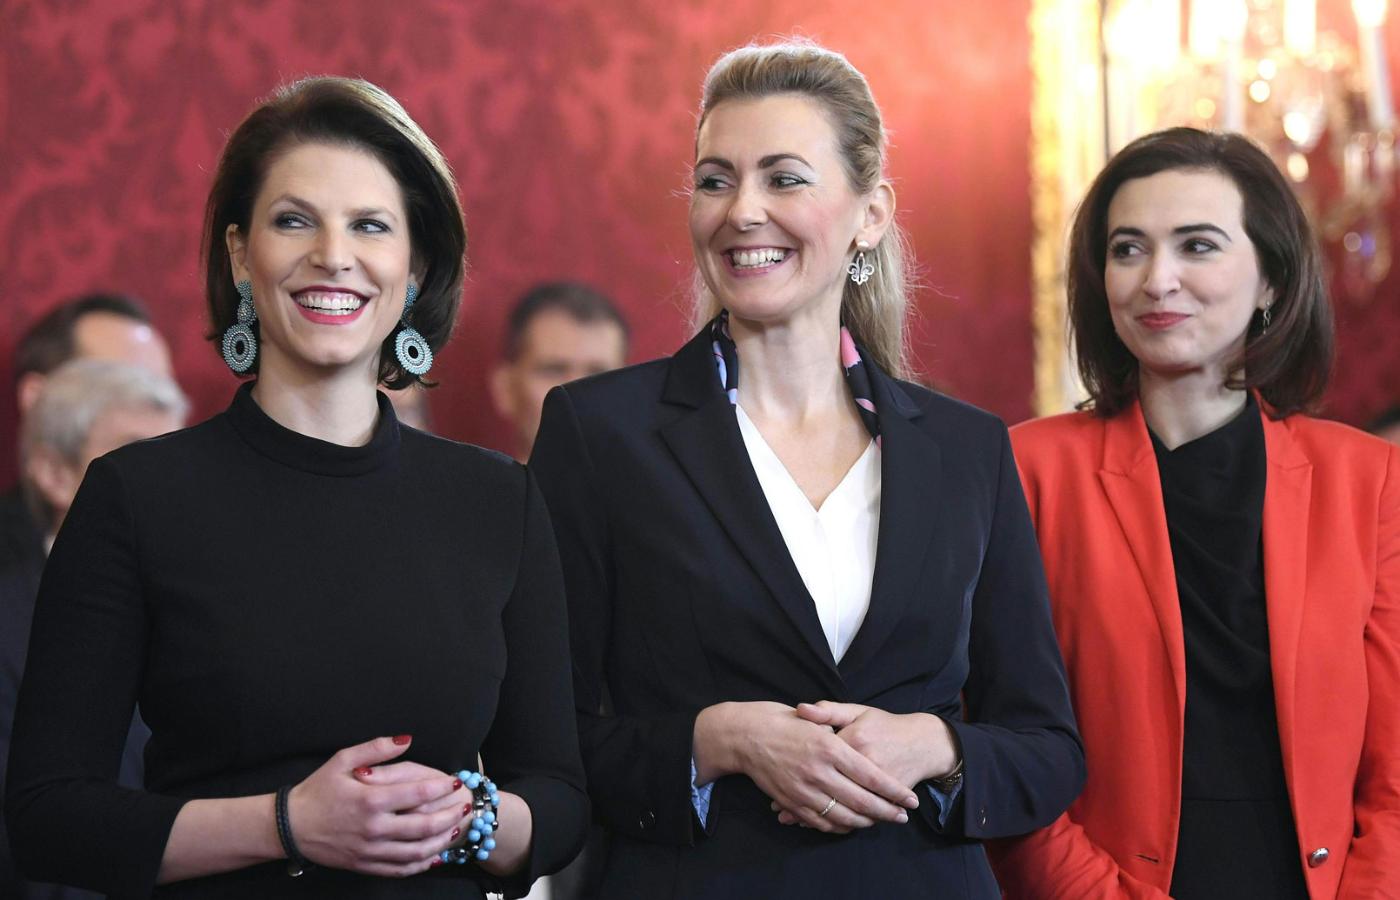 Zaprzysiężenie nowego rządu Austrii. Od lewej: minister do spraw europejskich Karoline Edtstadler, minister pracy, rodziny i młodzieży Christine Aschbacher oraz minister sprawiedliwości Alma Zadić.